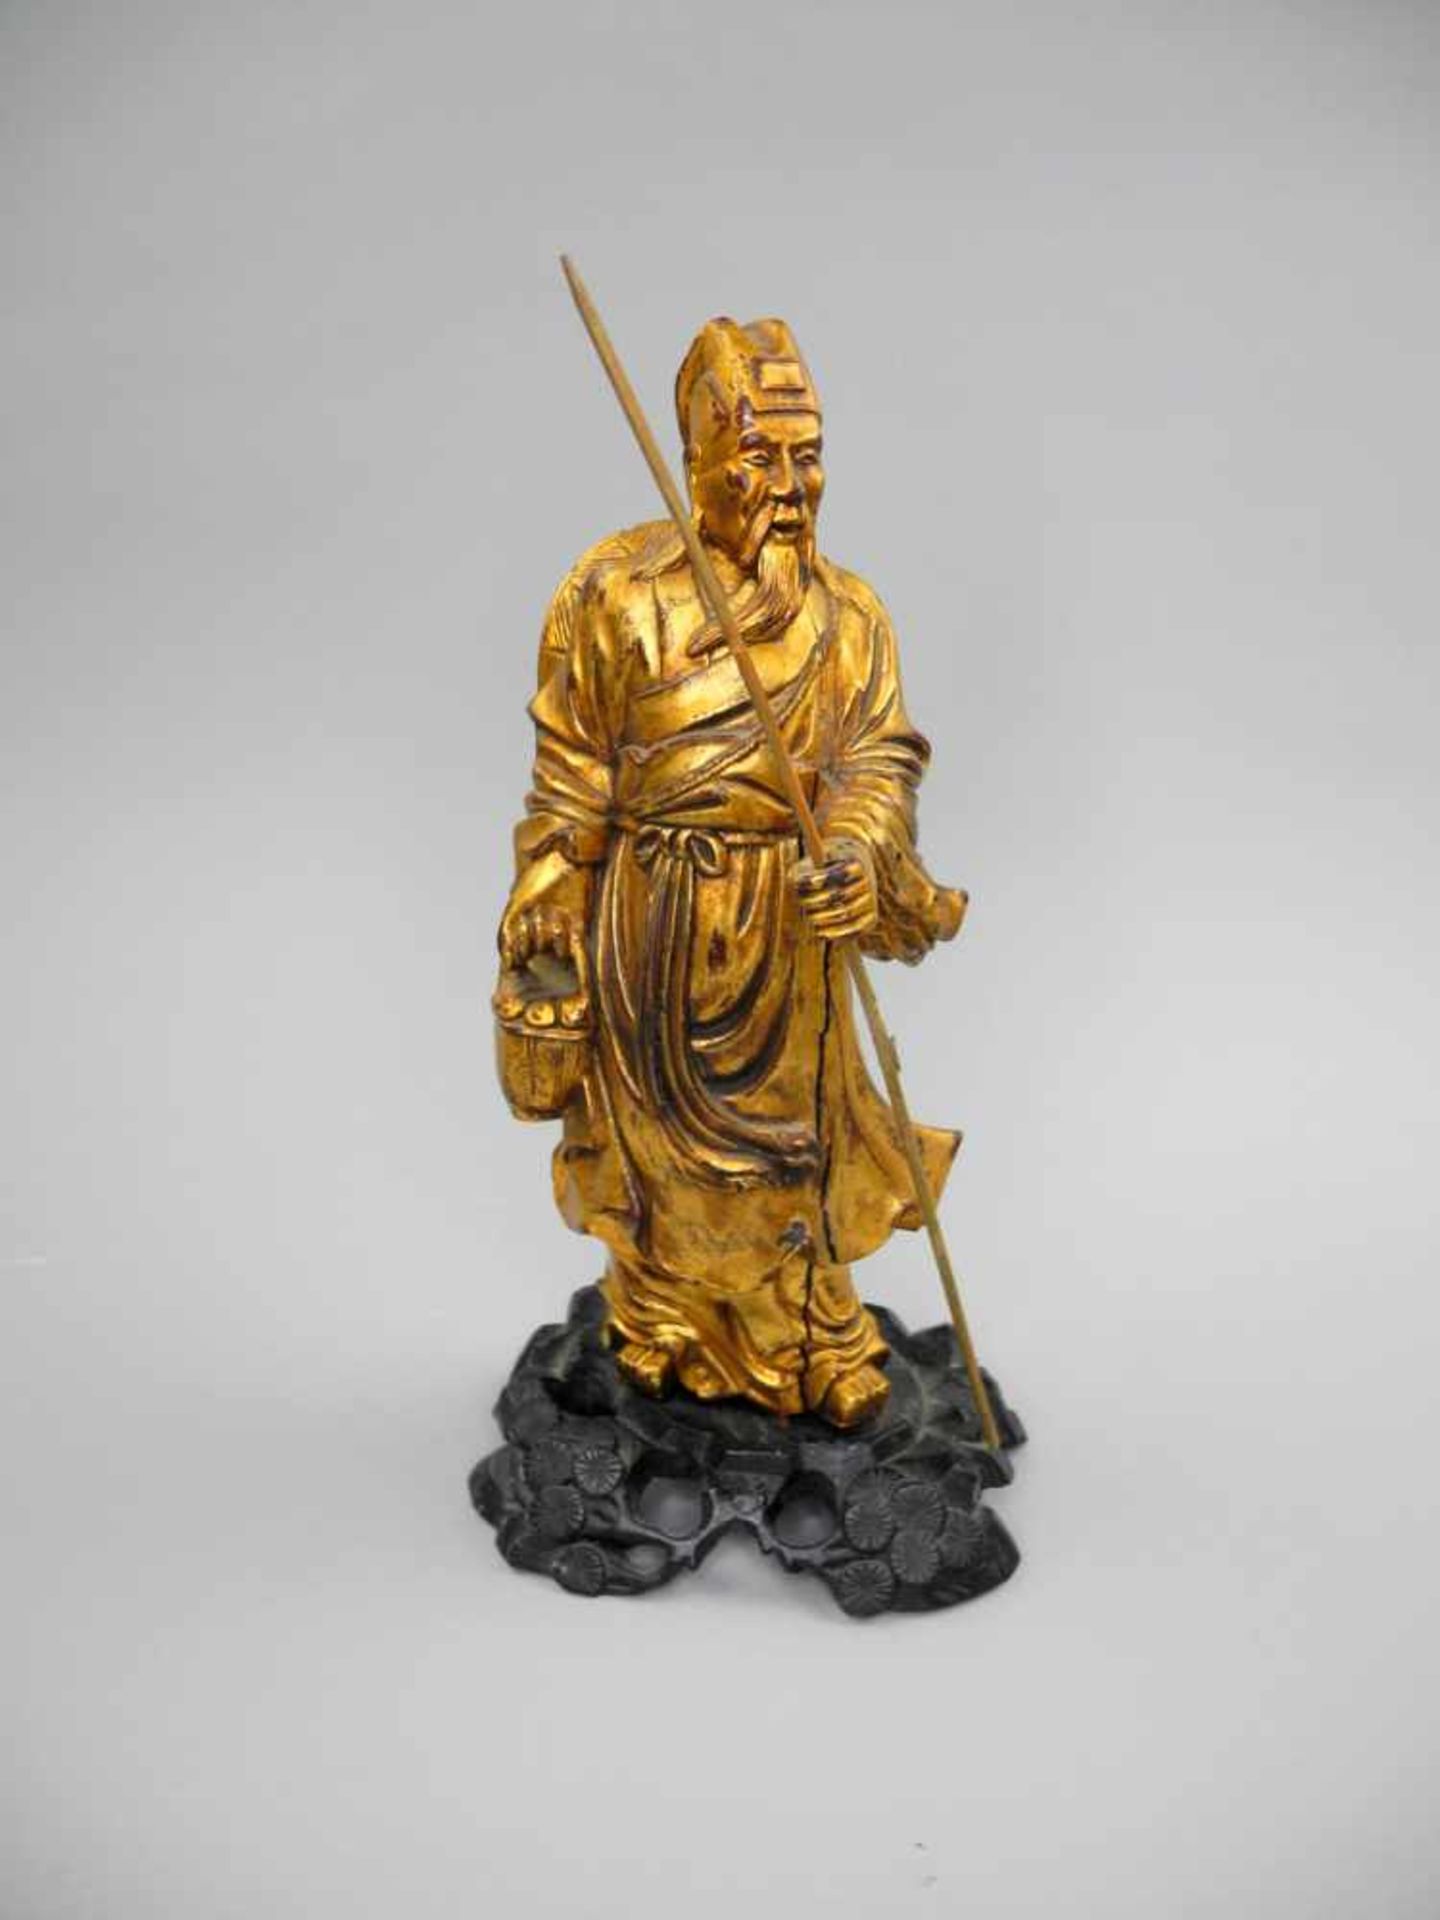 Chinesische HolzfigurHolz geschnitzt, goldfarben gefasst, auf dunkel lackiertem Holzsockel. Figur